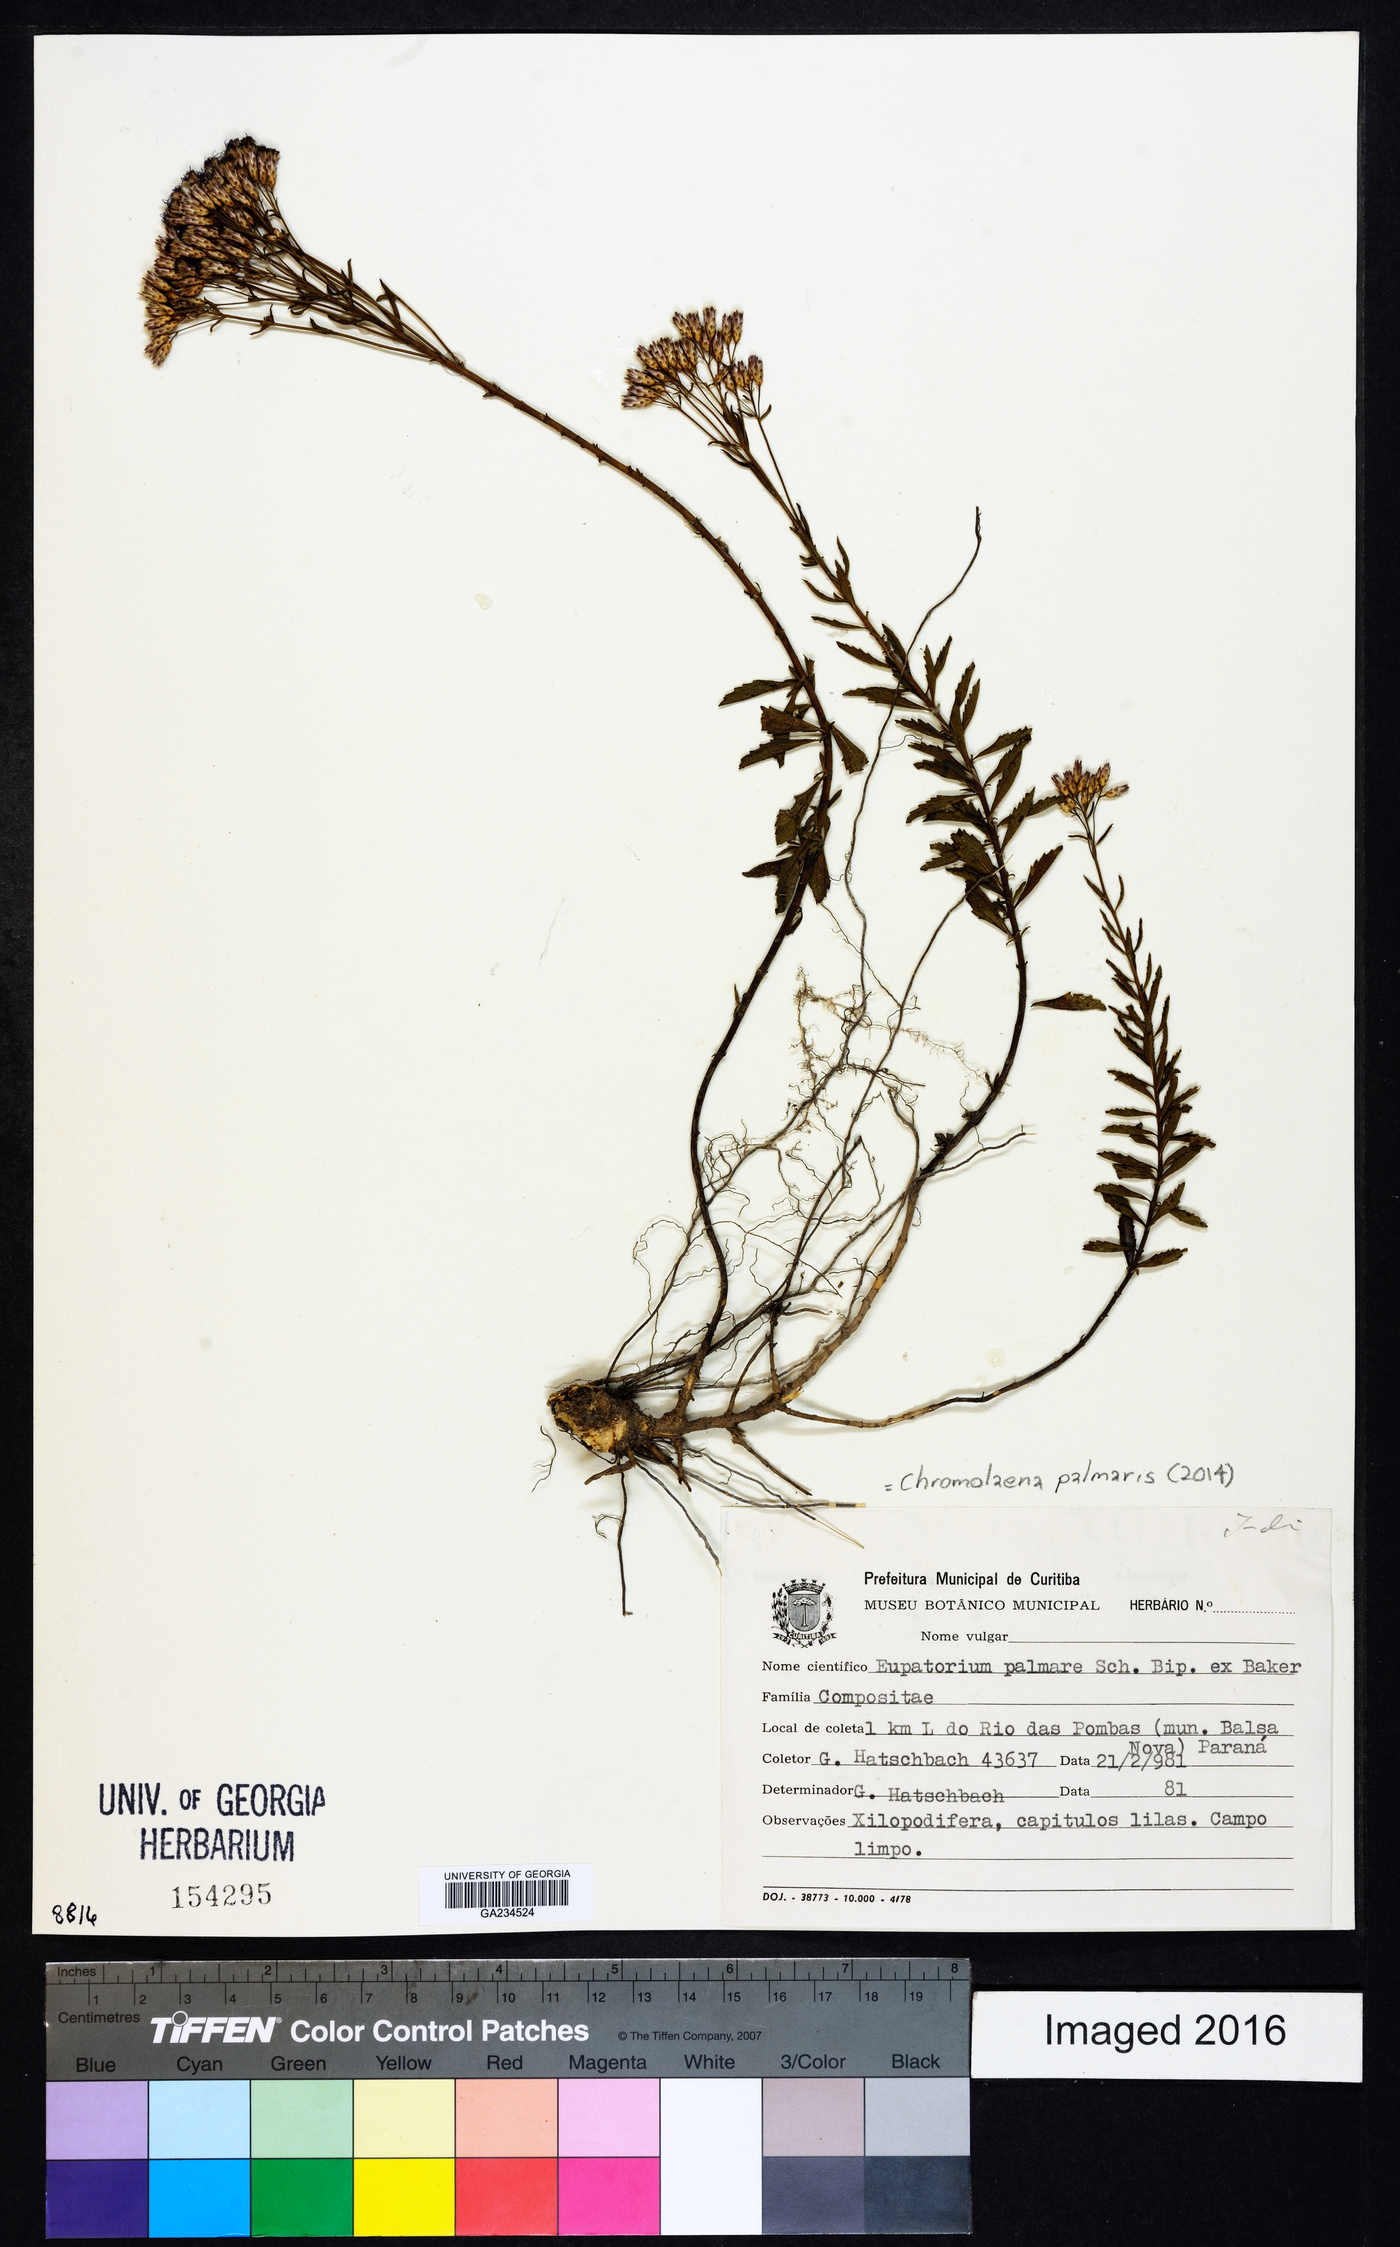 Chromolaena palmaris image